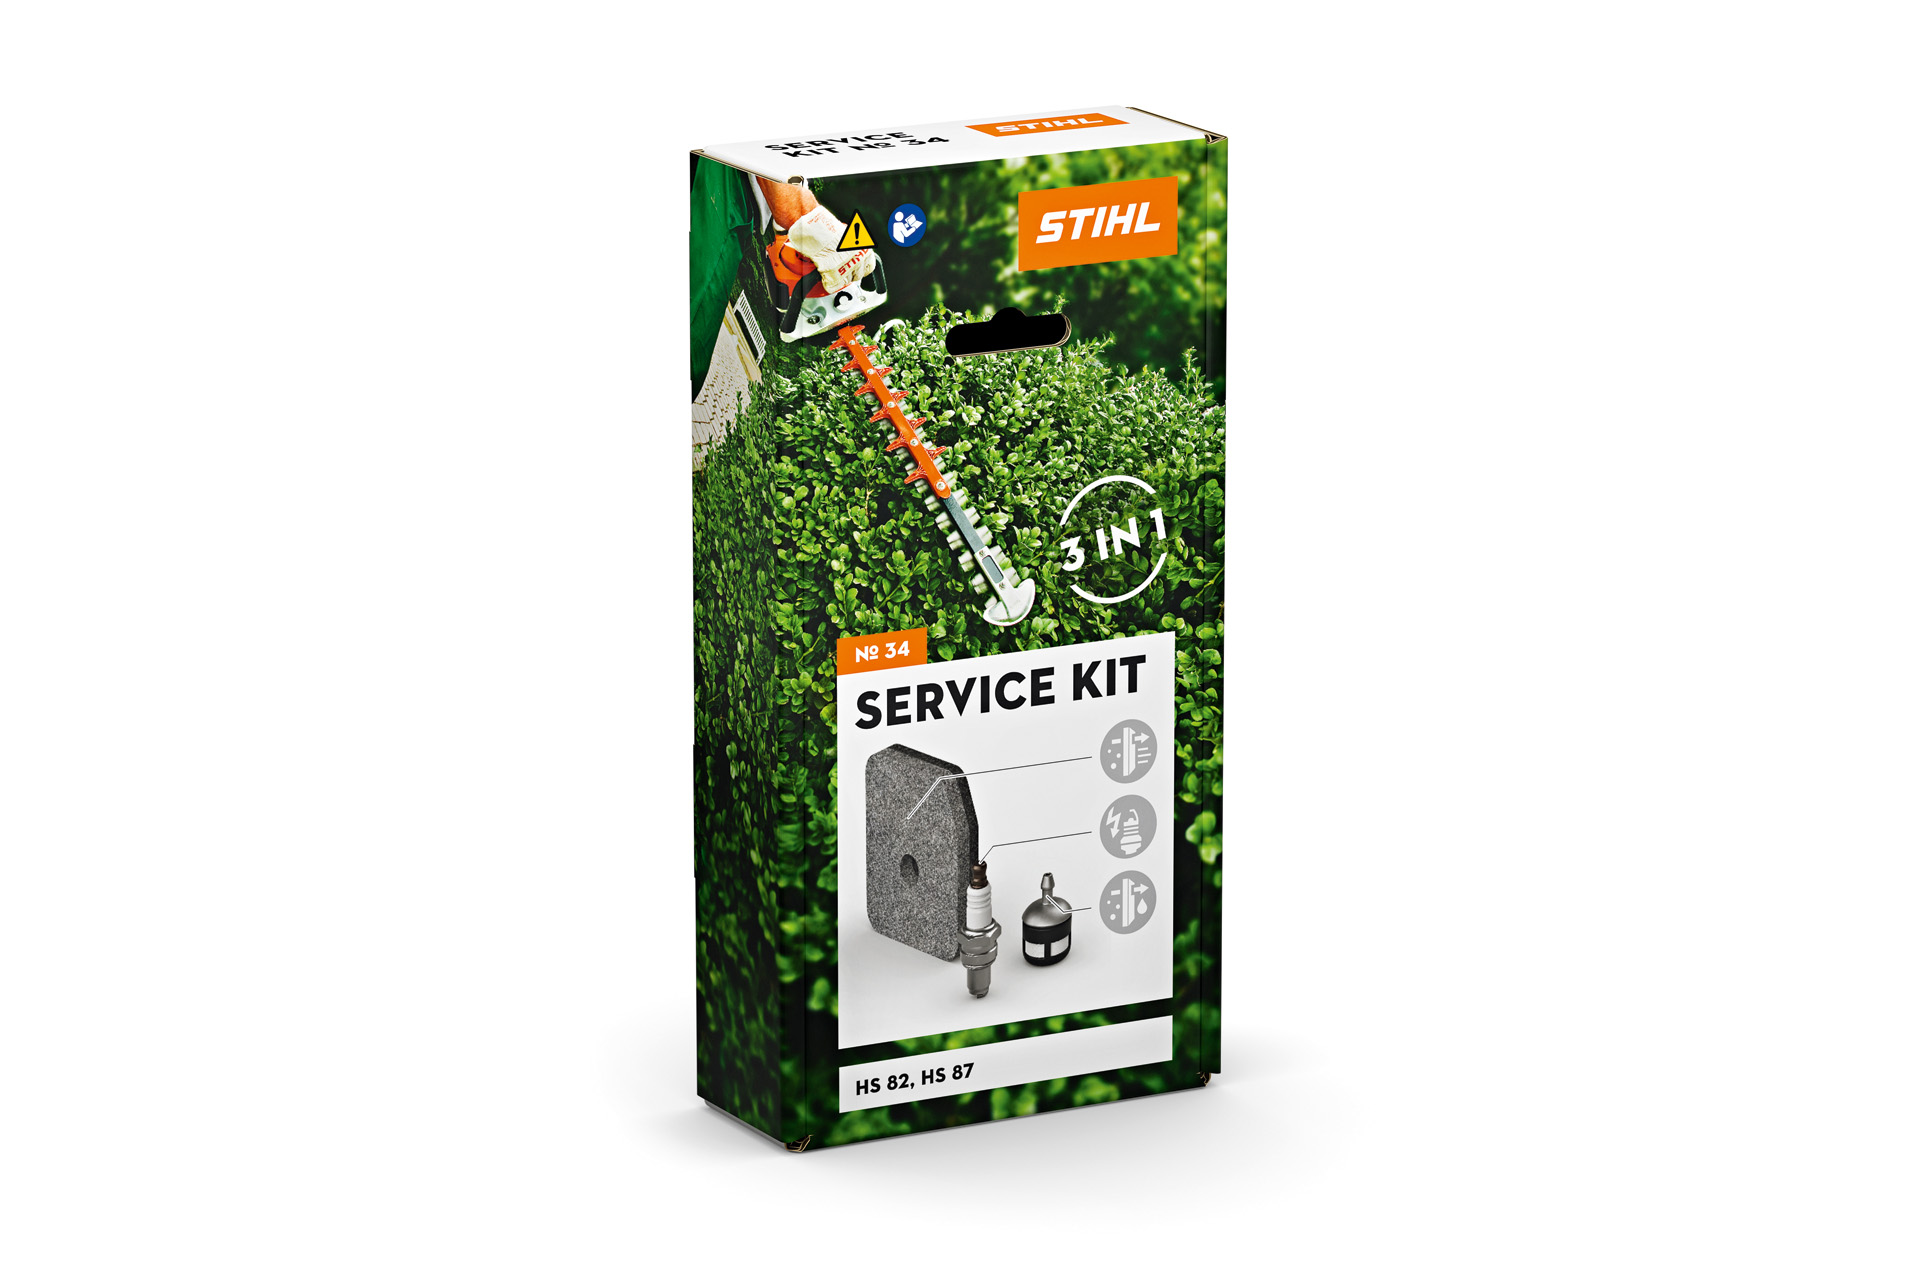 Service Kit 34